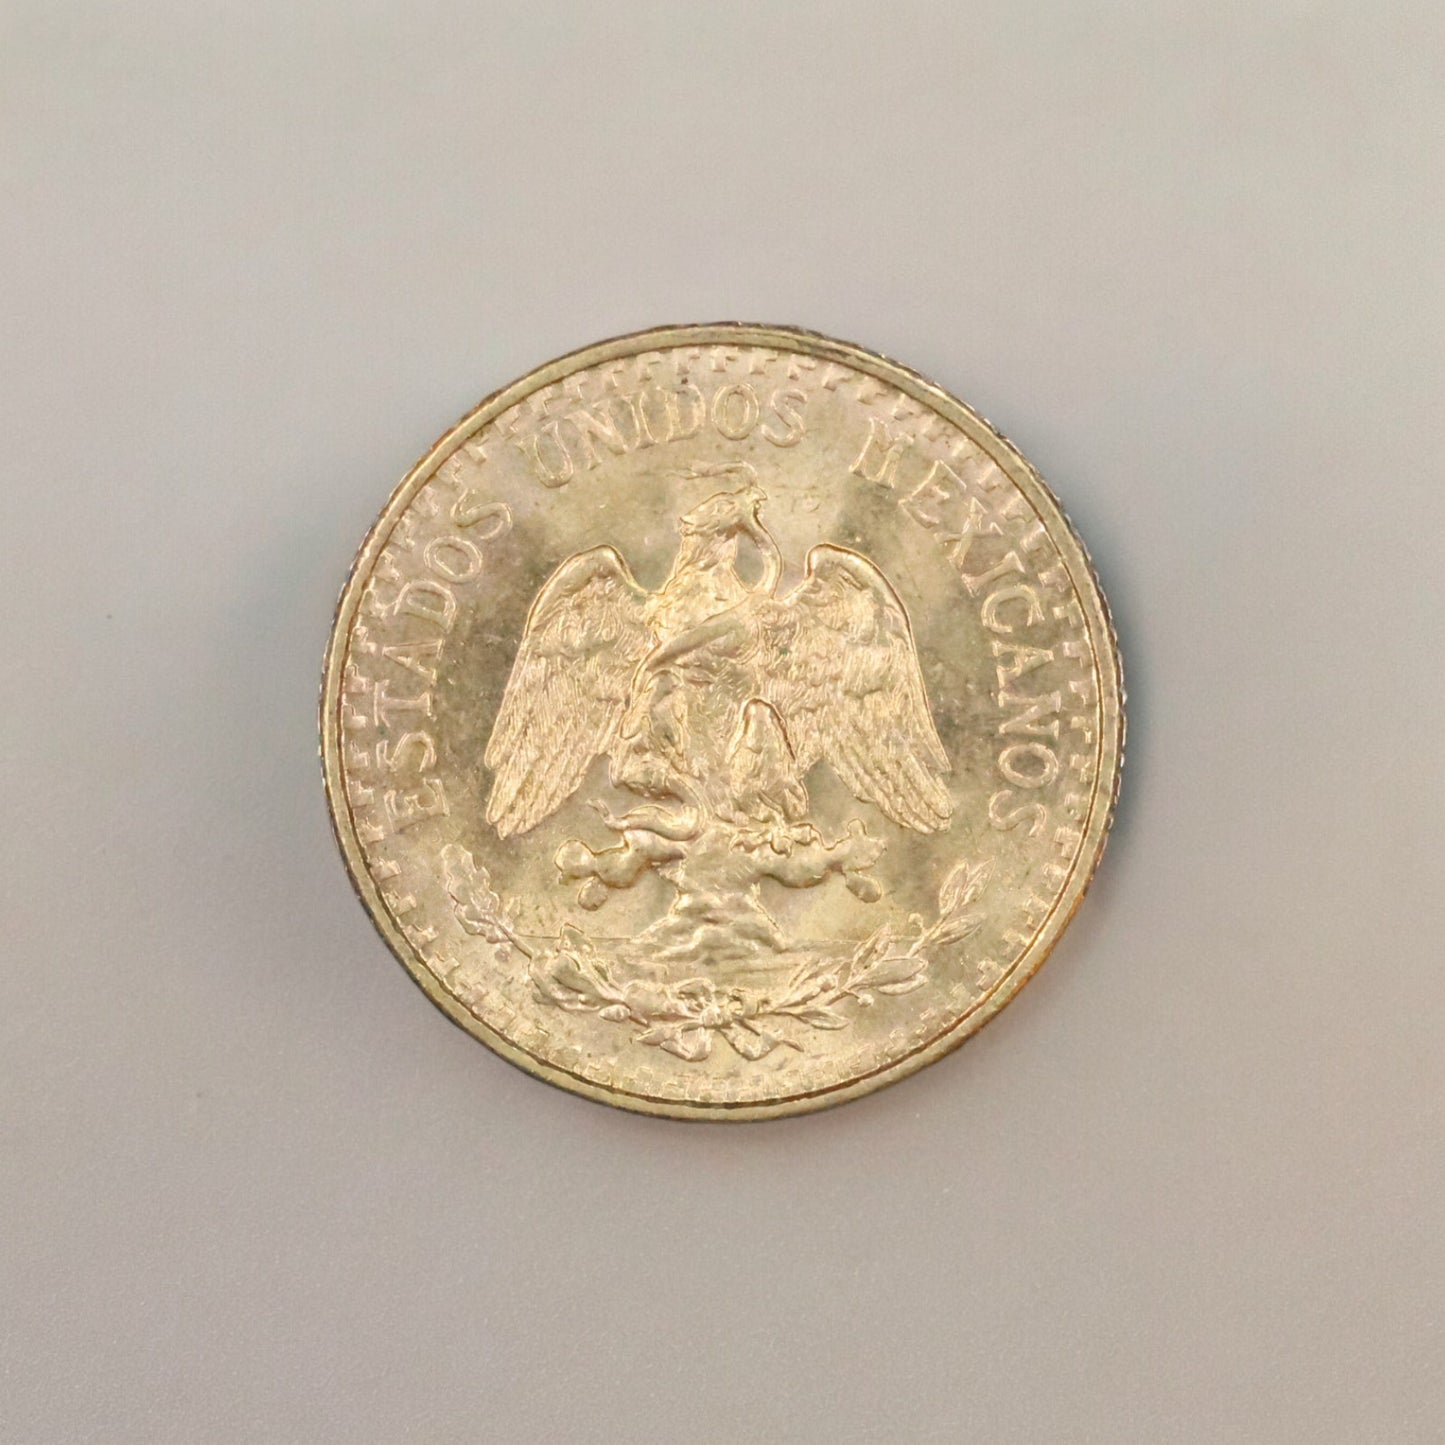 1945 2 Pesos Dos Pesos Mexico Gold Coin